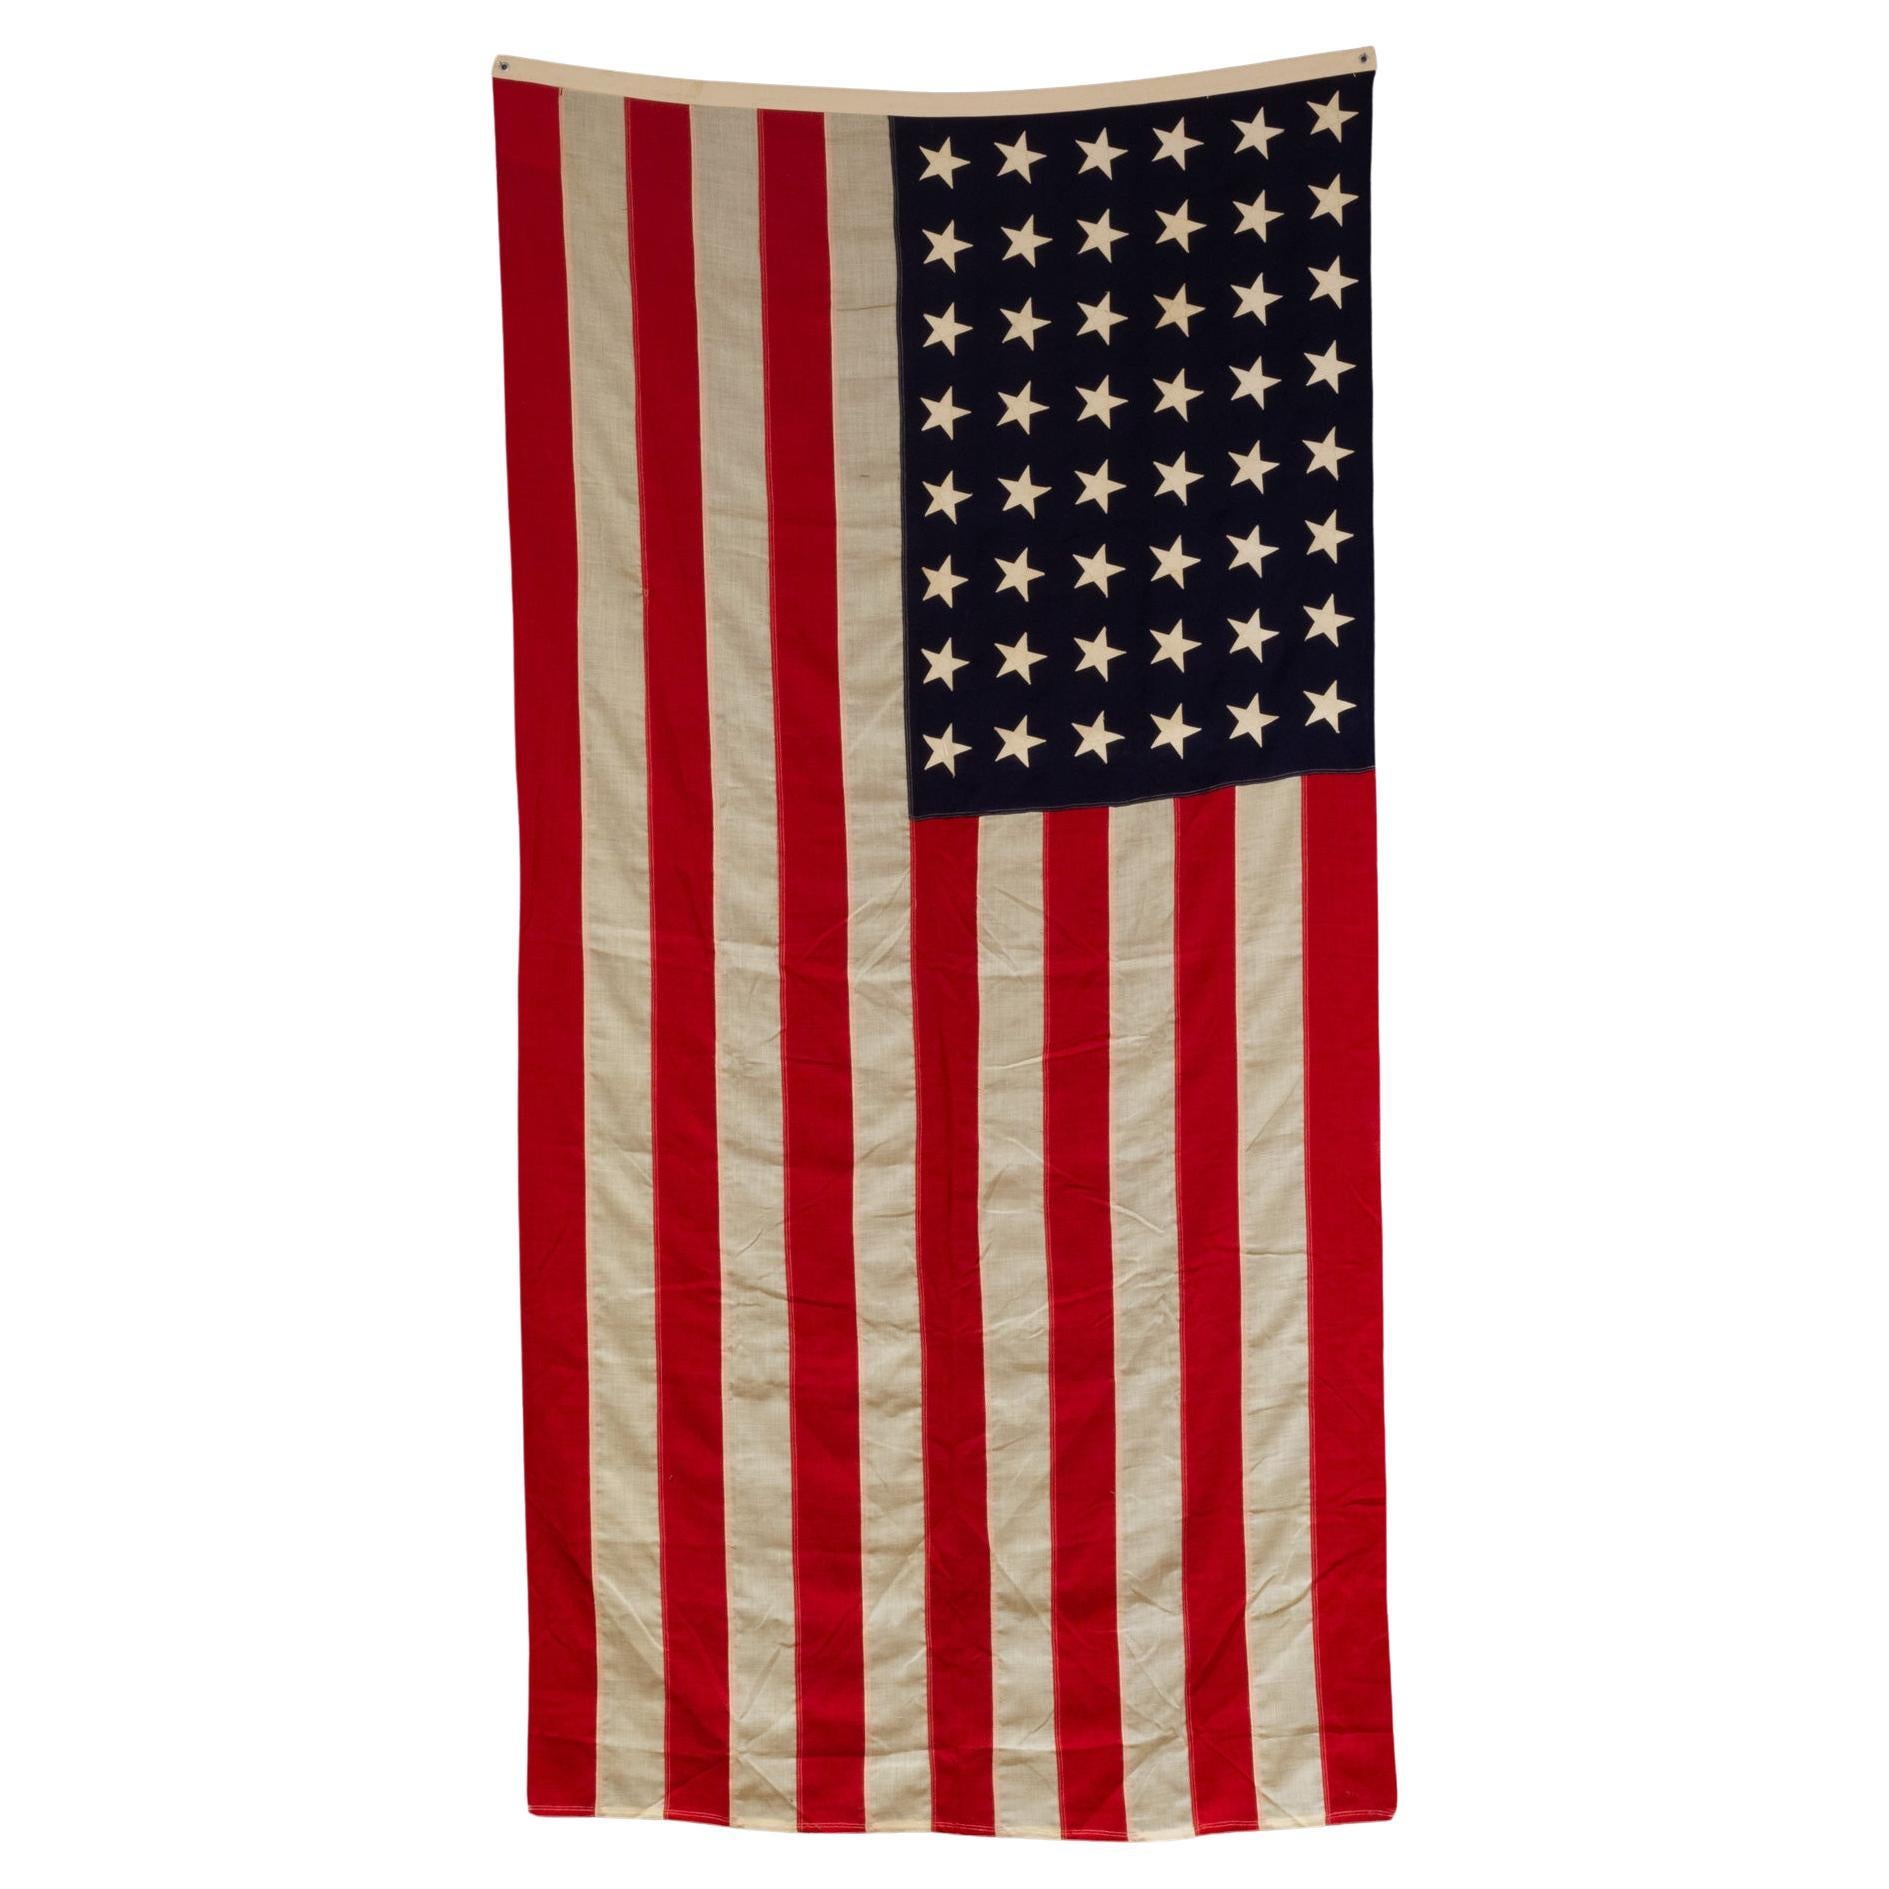 Grand drapeau américain en laine avec 48 étoiles, vers 1940-1950, expédition gratuite